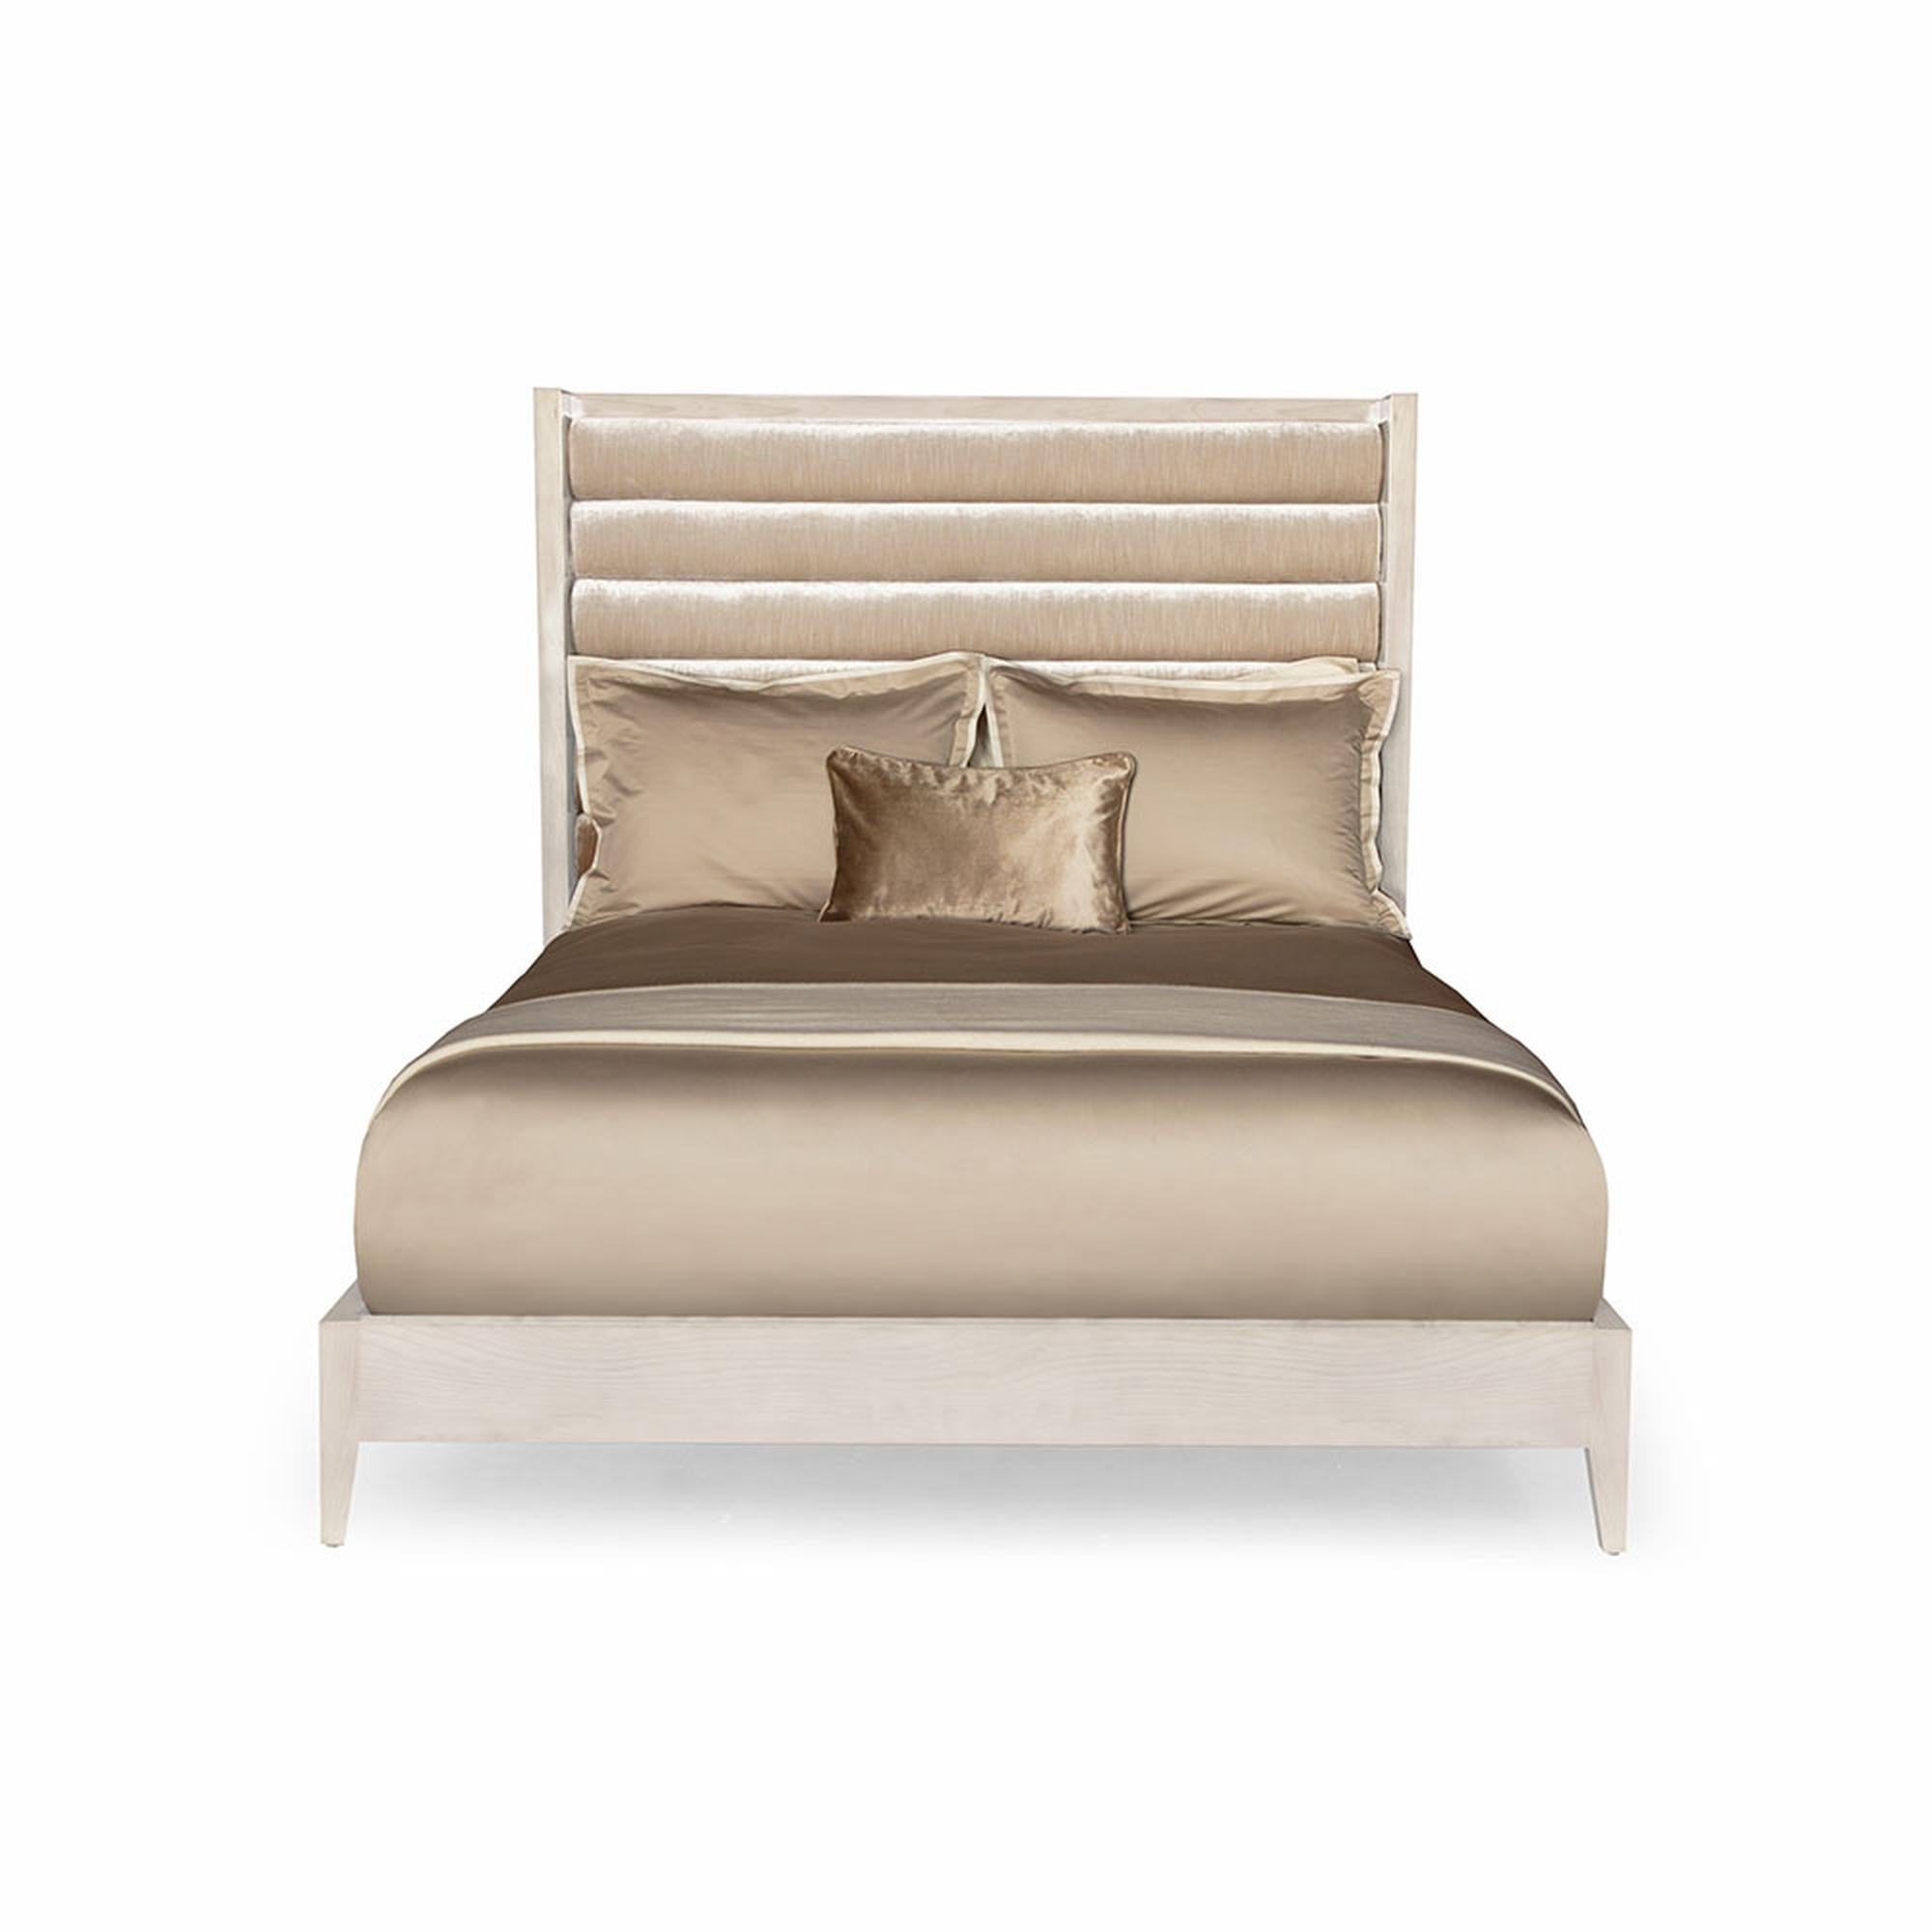 Das Crawford-Bett ist ein stilvolles und schickes Bett für das Schlafzimmer. Mit seinem horizontalen, getufteten Kopfteil, den konisch zulaufenden Beinen und dem blush gebeizten Holz bietet dieses Bett luxuriösen Komfort und strahlt gleichzeitig